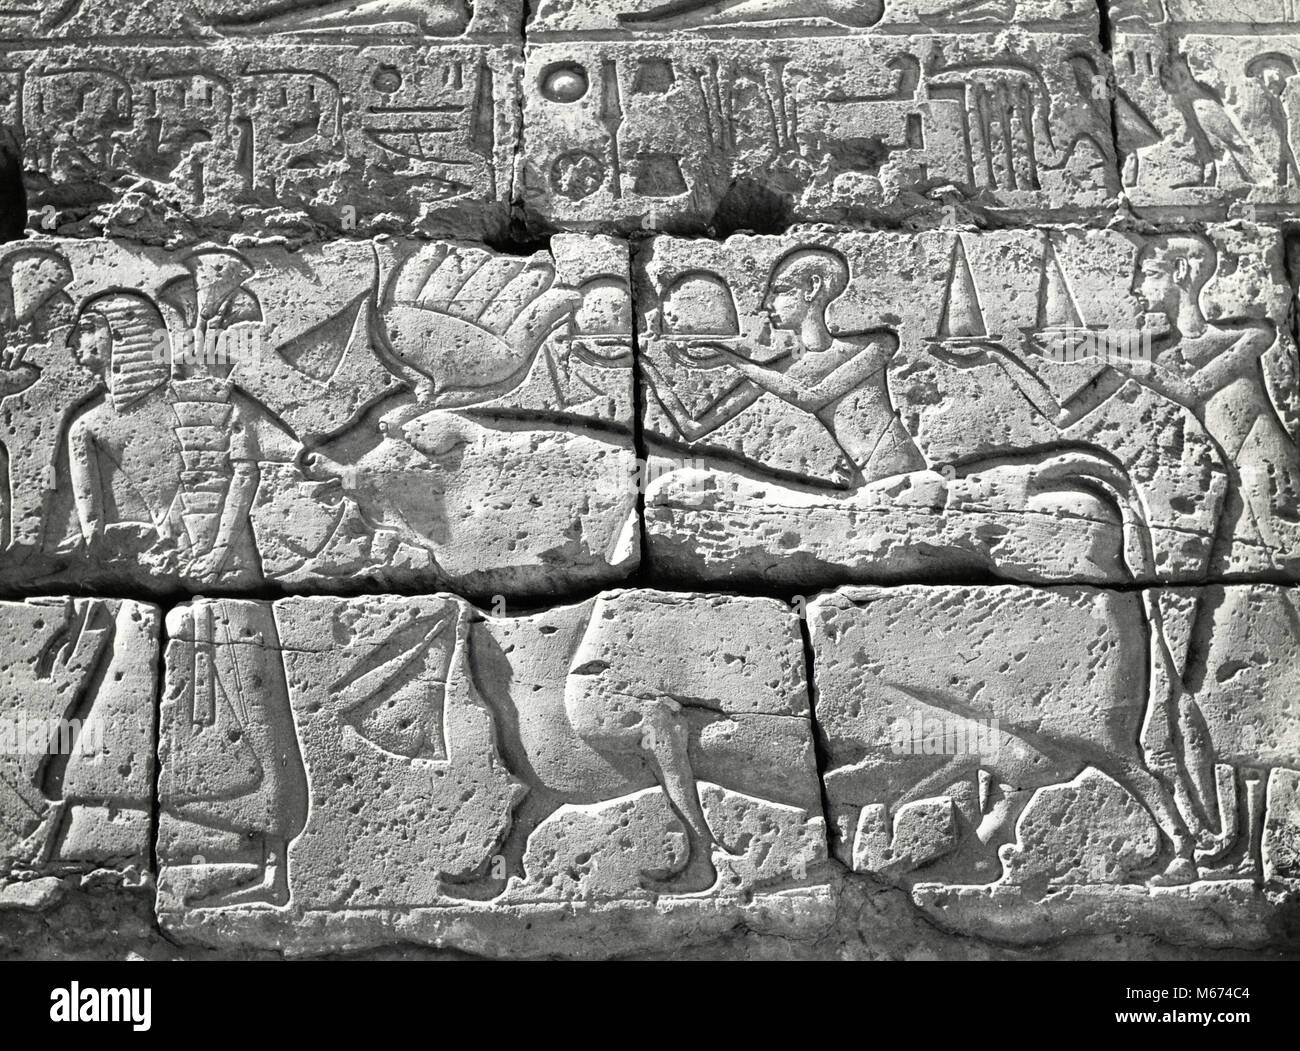 Procesión religiosa con Bull deidad egipcia, bajorrelieve Foto de stock